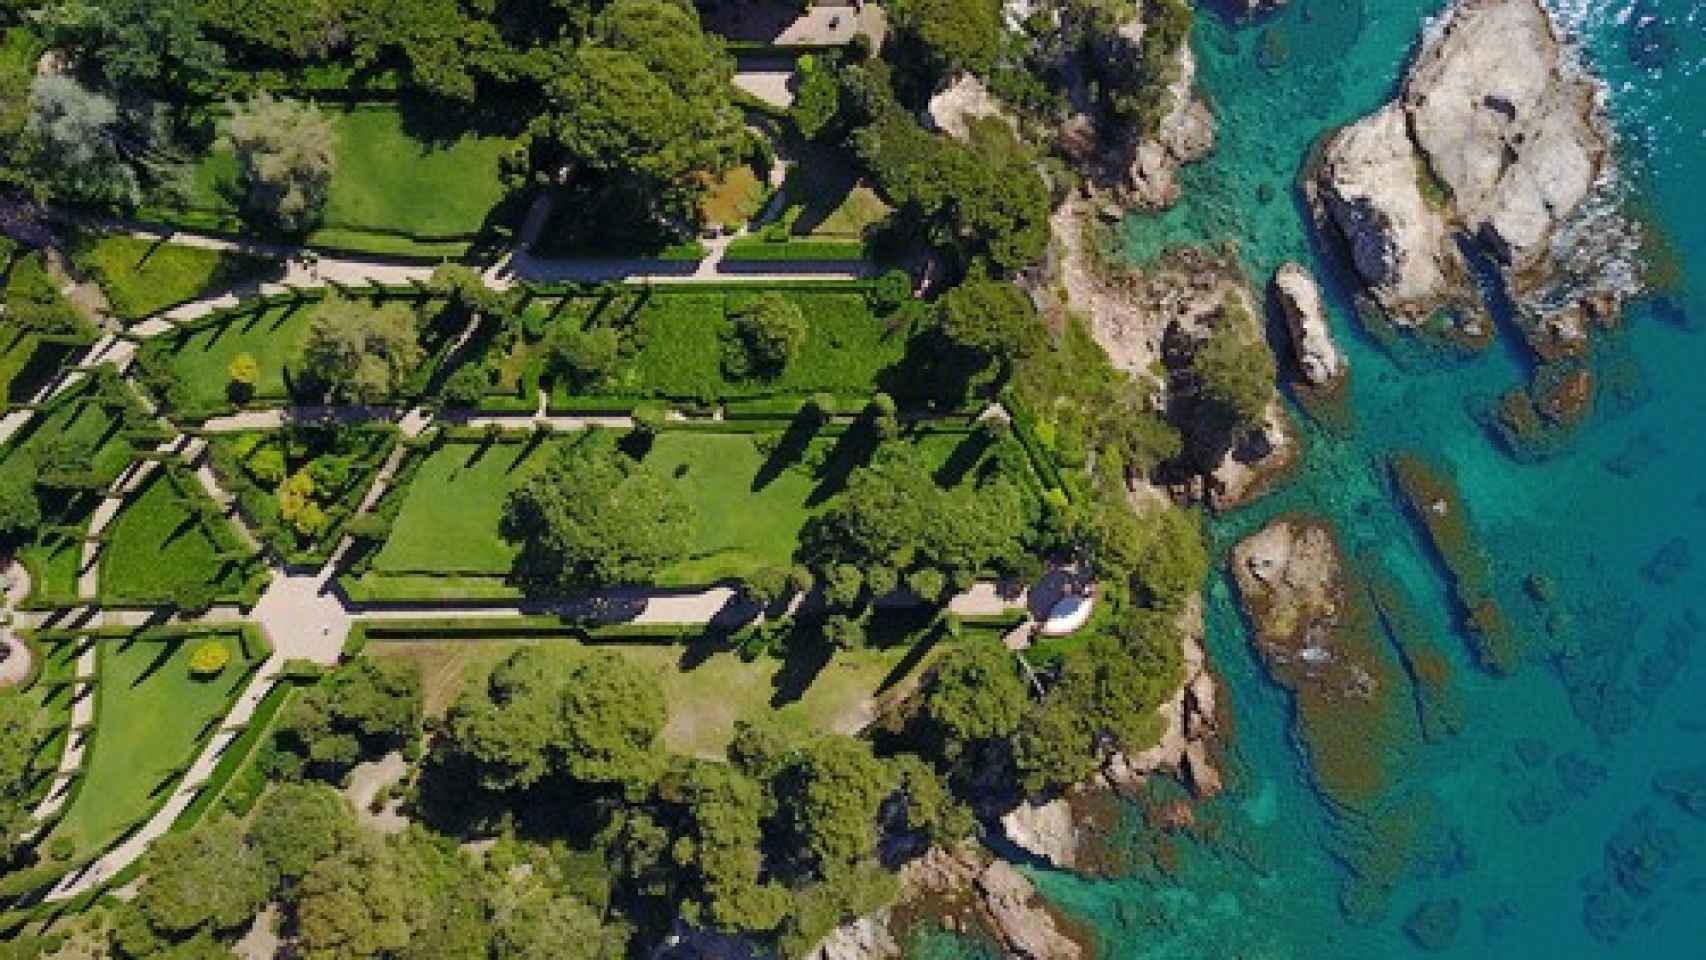 Vista aérea de los jardines de Santa Clotilde